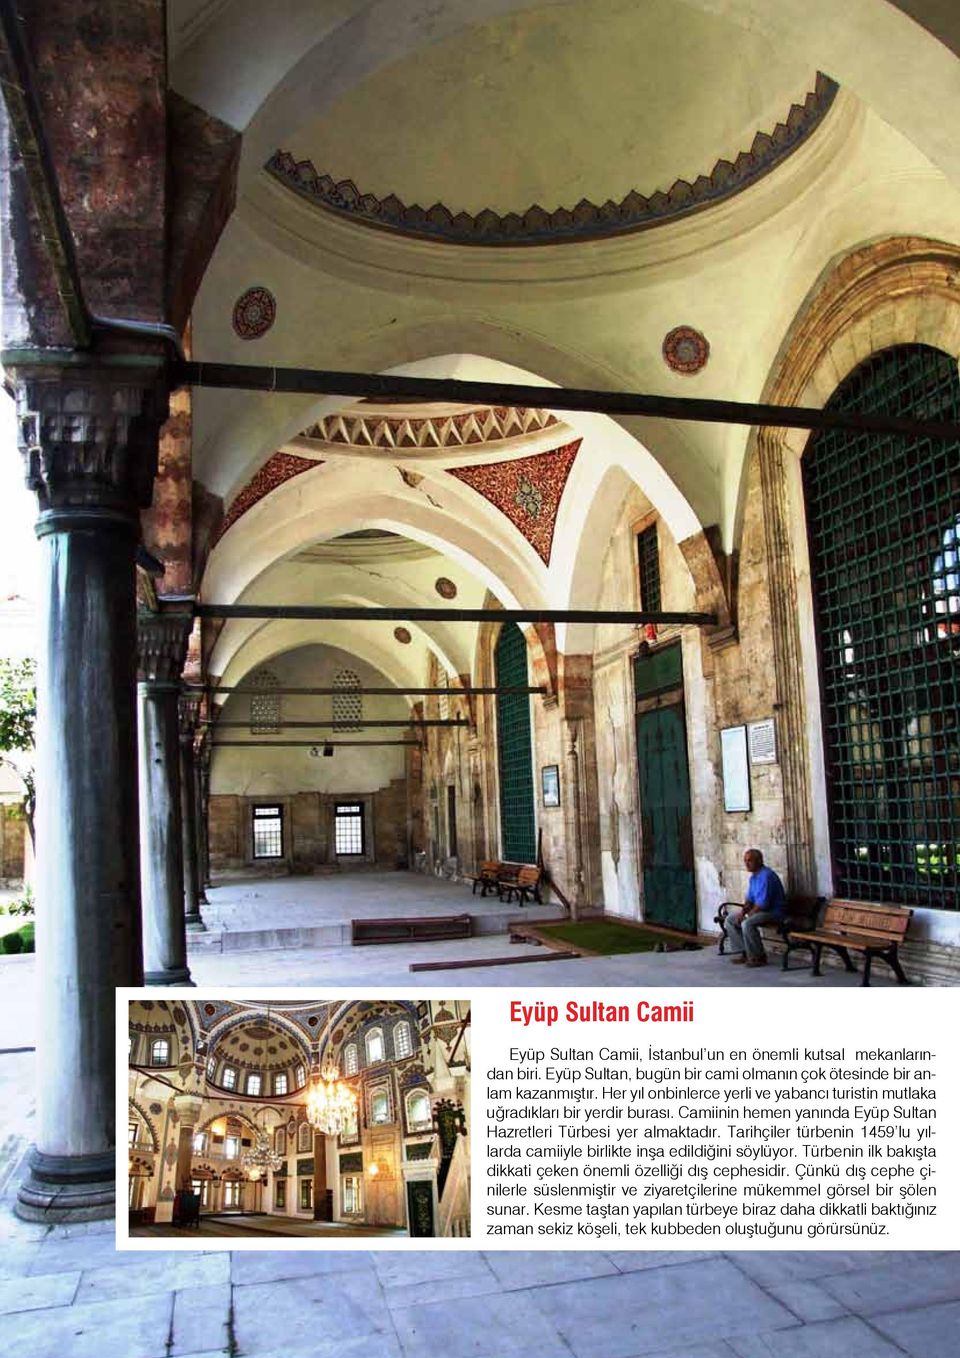 Camiinin hemen yanında Eyüp Sultan Hazretleri Türbesi yer almaktadır. Tarihçiler türbenin 1459 lu yıllarda camiiyle birlikte inşa edildiğini söylüyor.